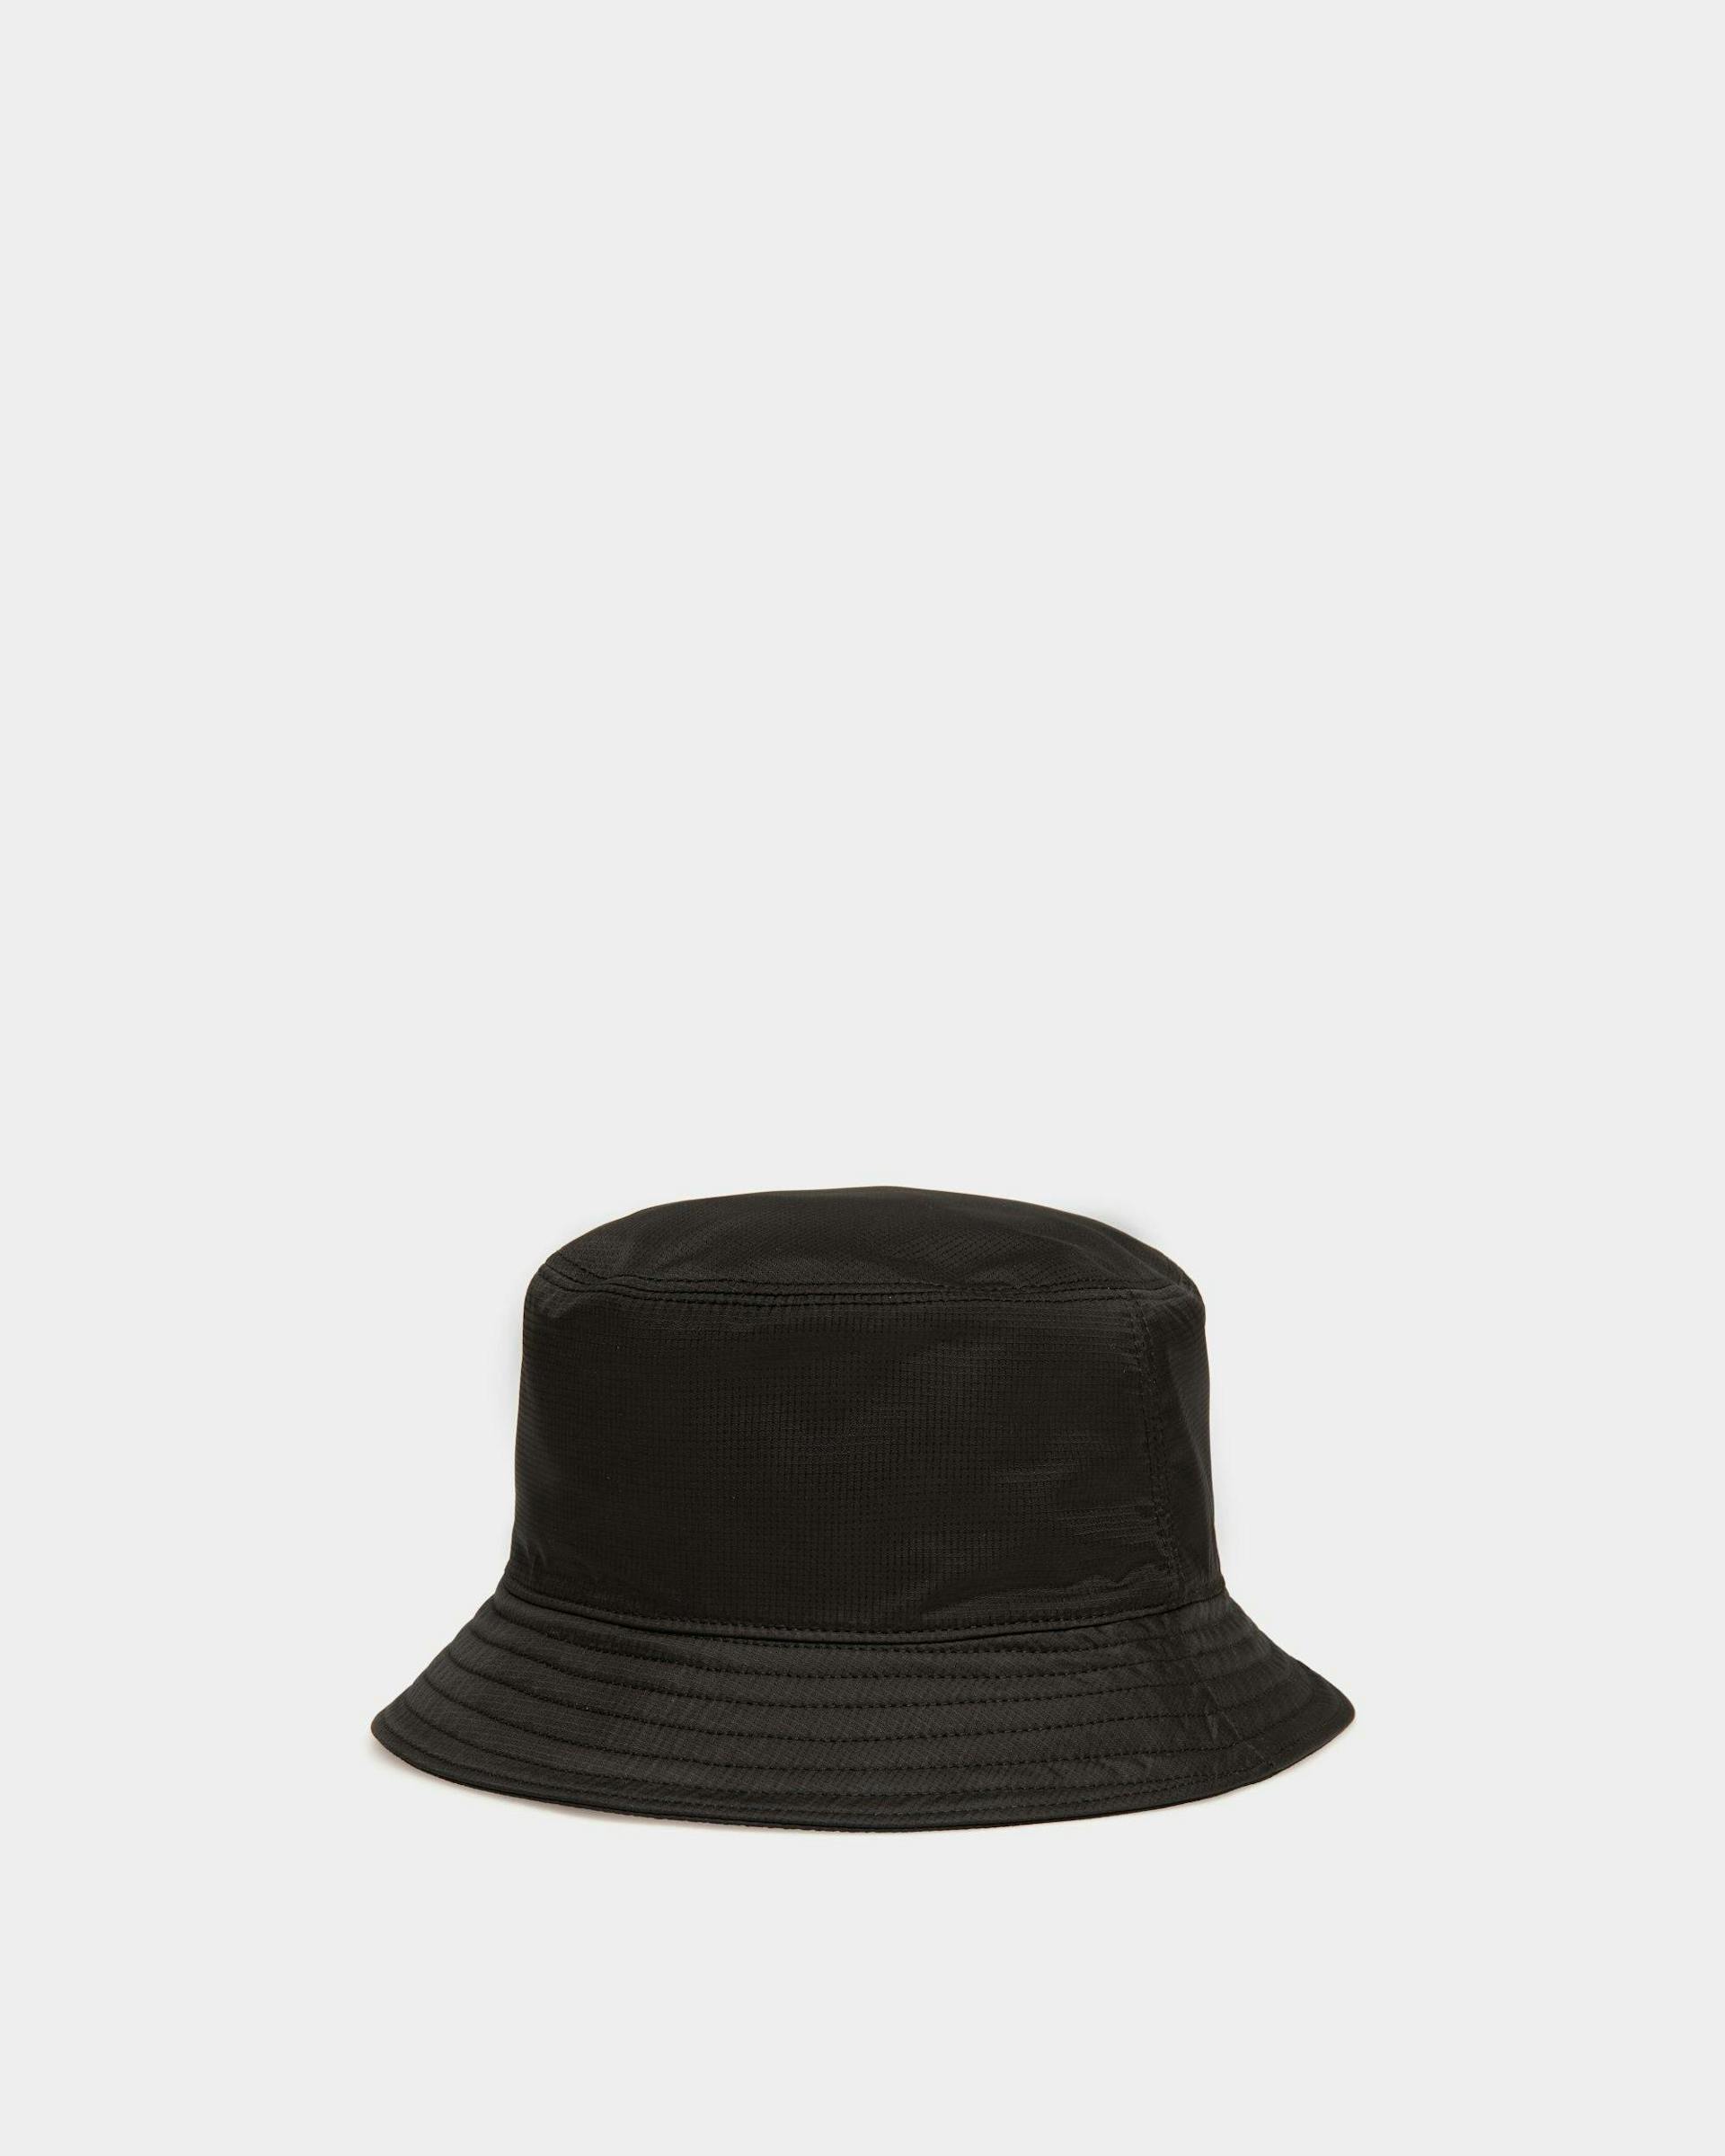 Men's Bucket Hat In Black | Bally | Still Life 3/4 Back